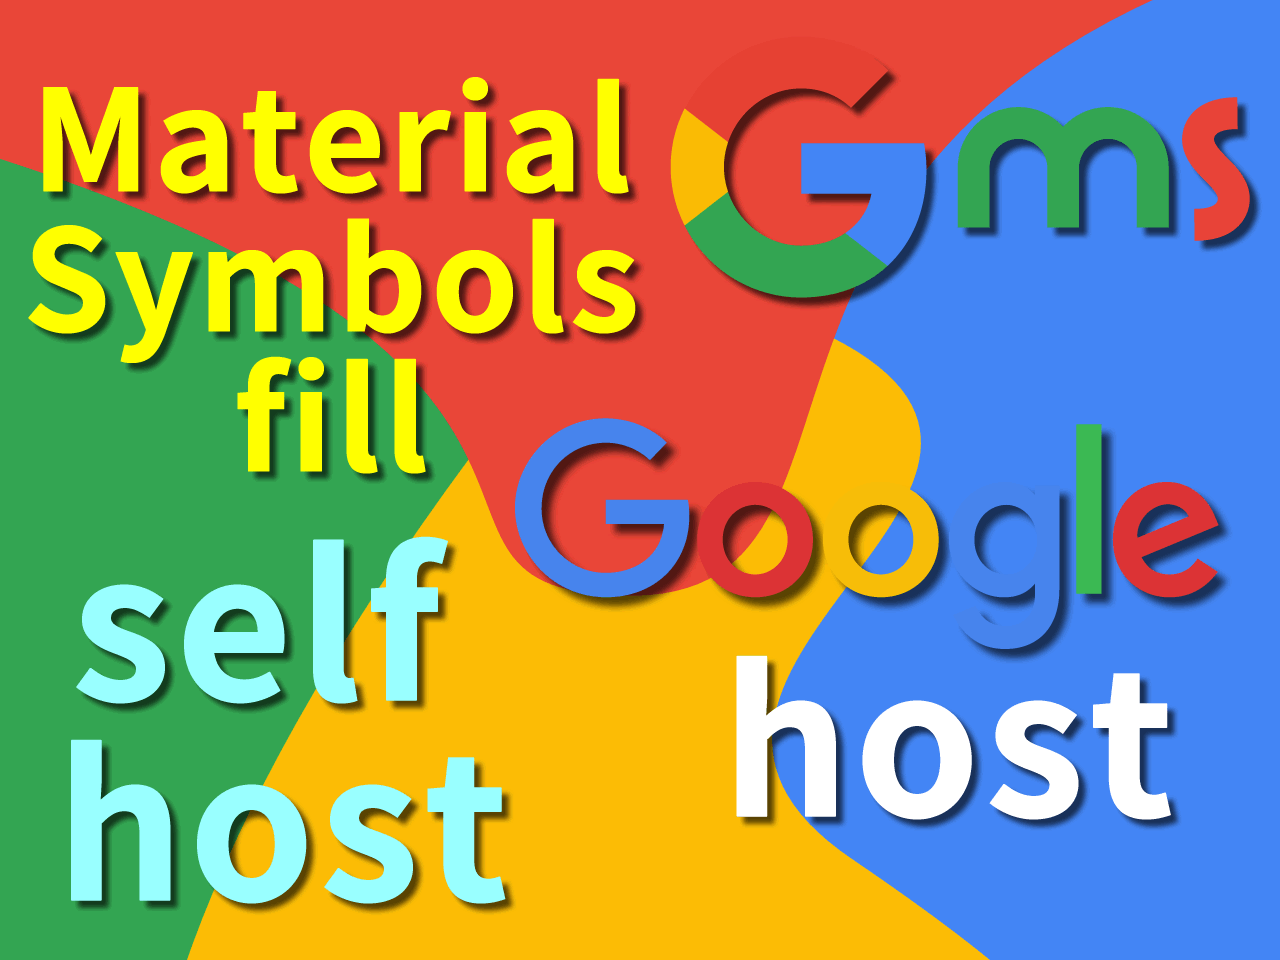 Google Material Symbols最短手順 可変フォントFILL(塗りつぶし) 太字細字あり Googleホスト & セルフ-ホスト CSS アイコンファイル WordPress